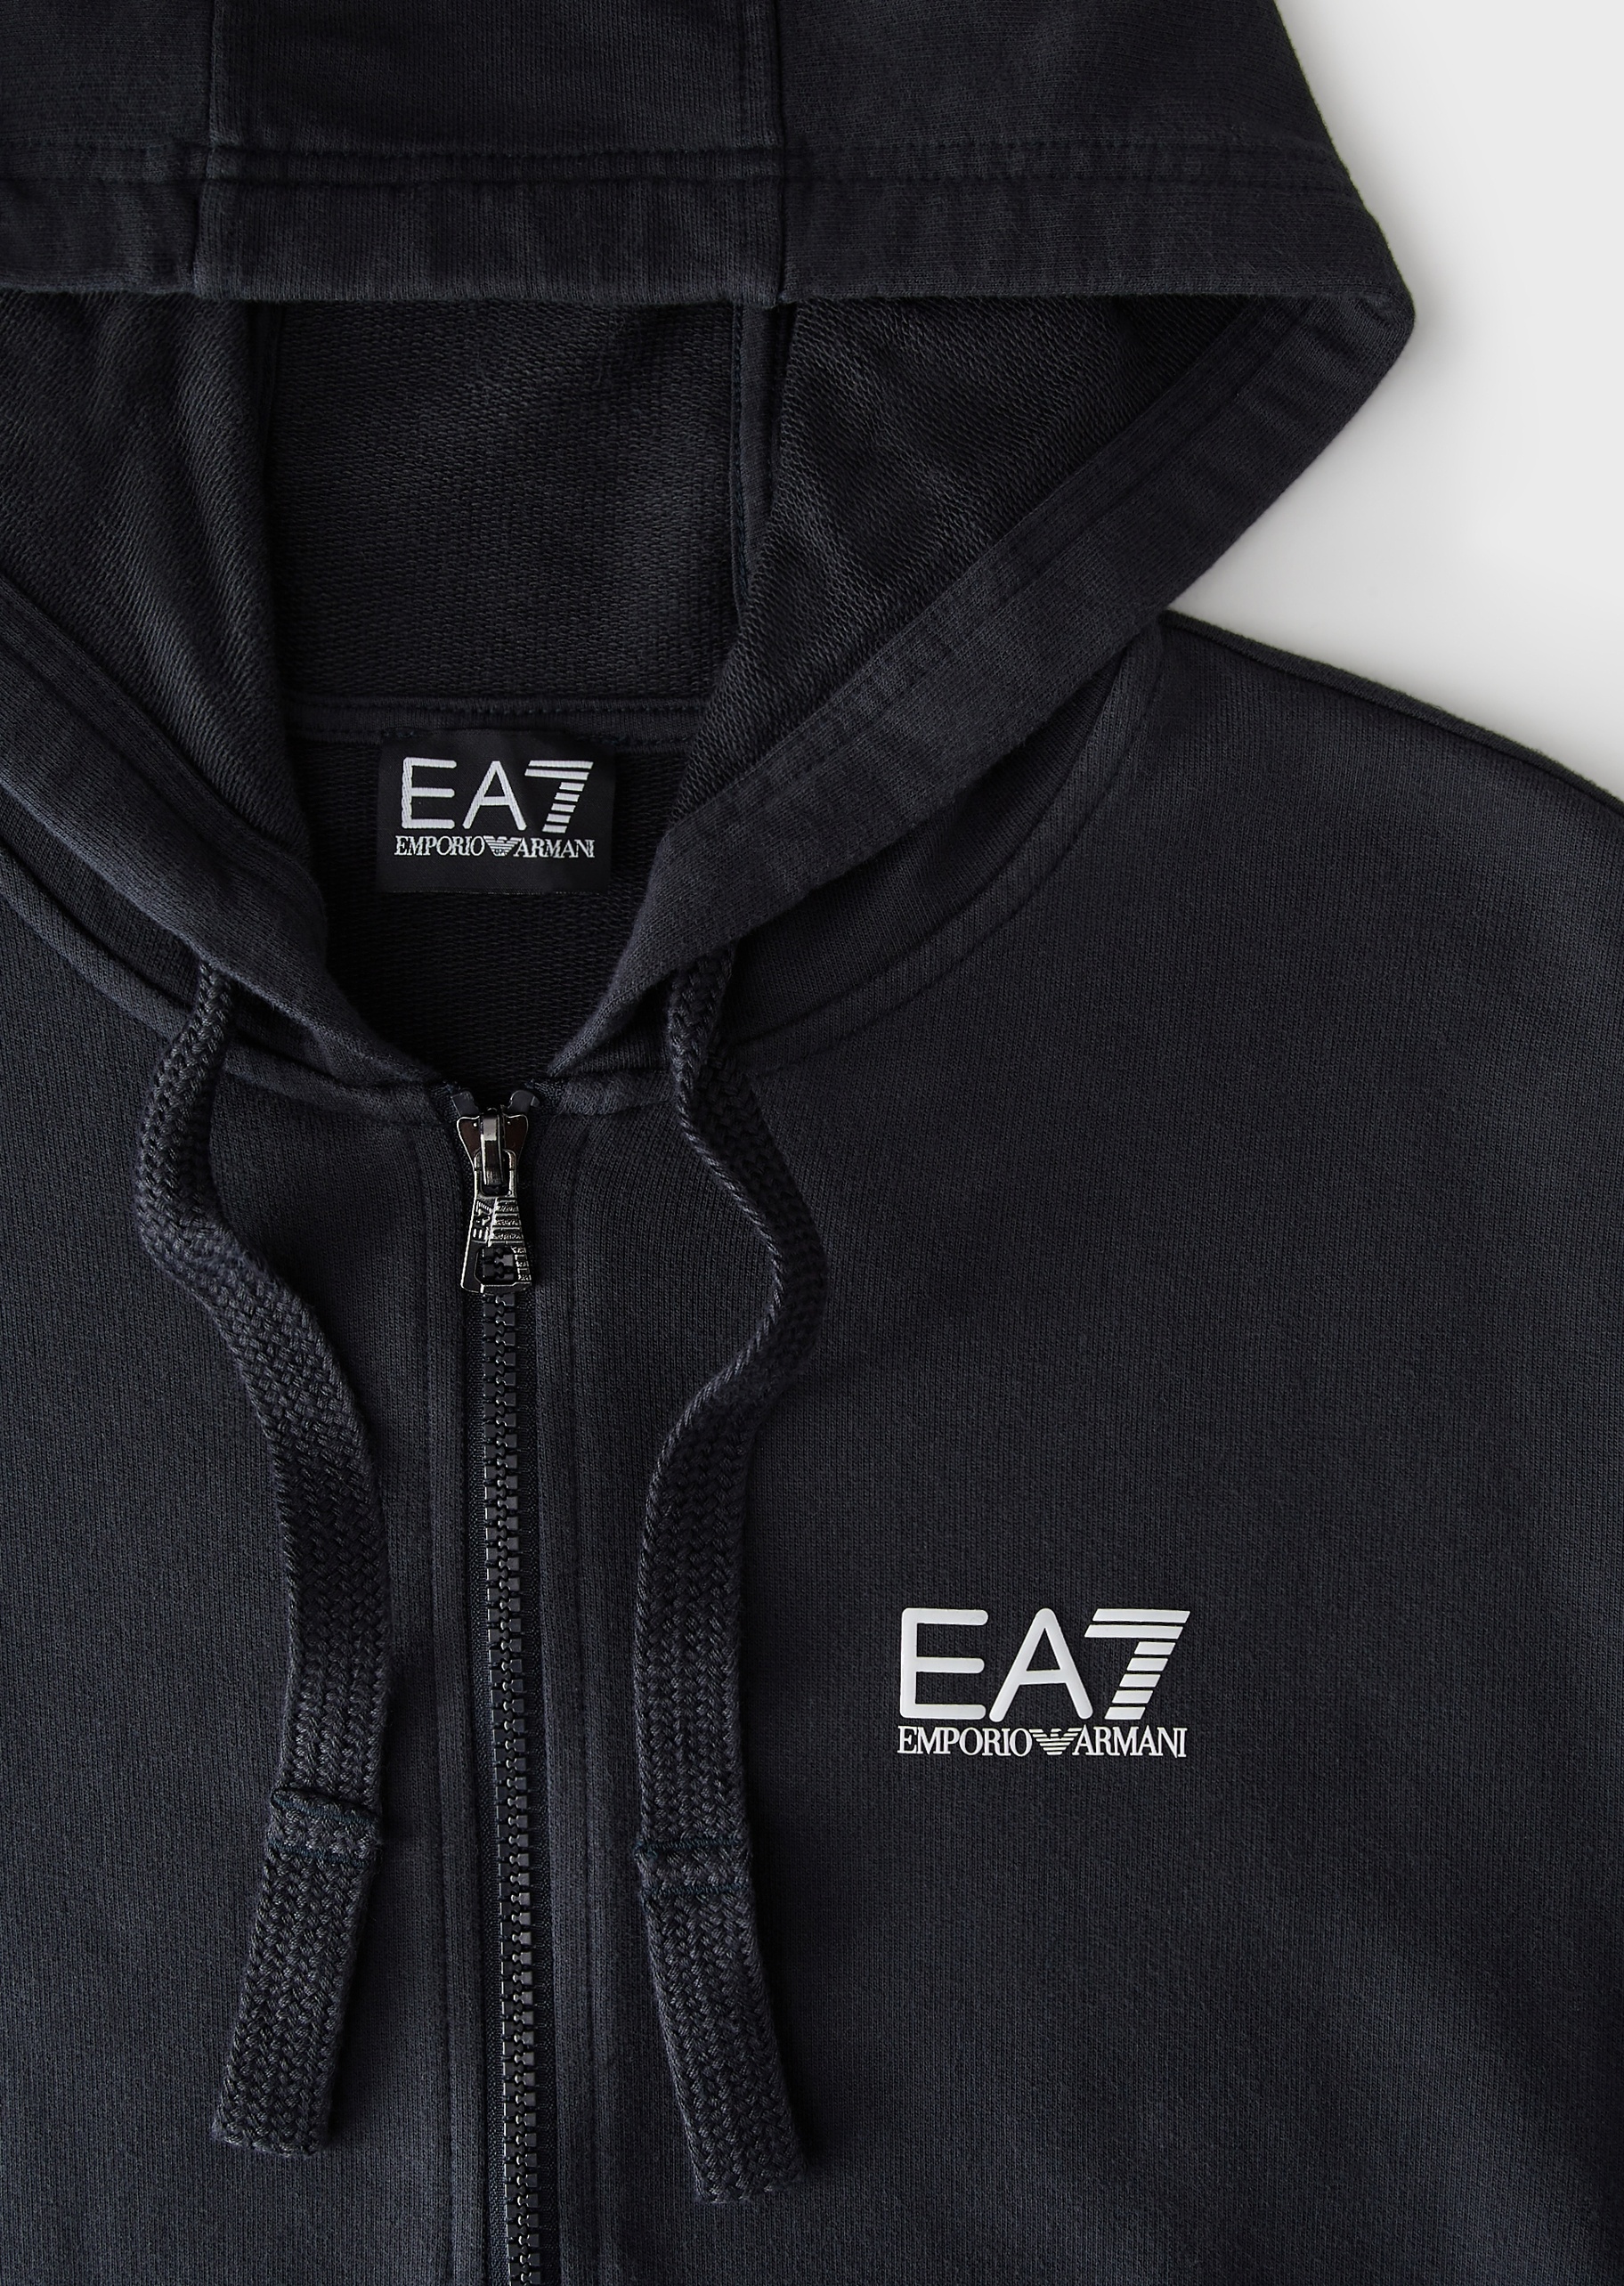 EA7 男士全棉连帽开衫直筒长裤健身运动套装